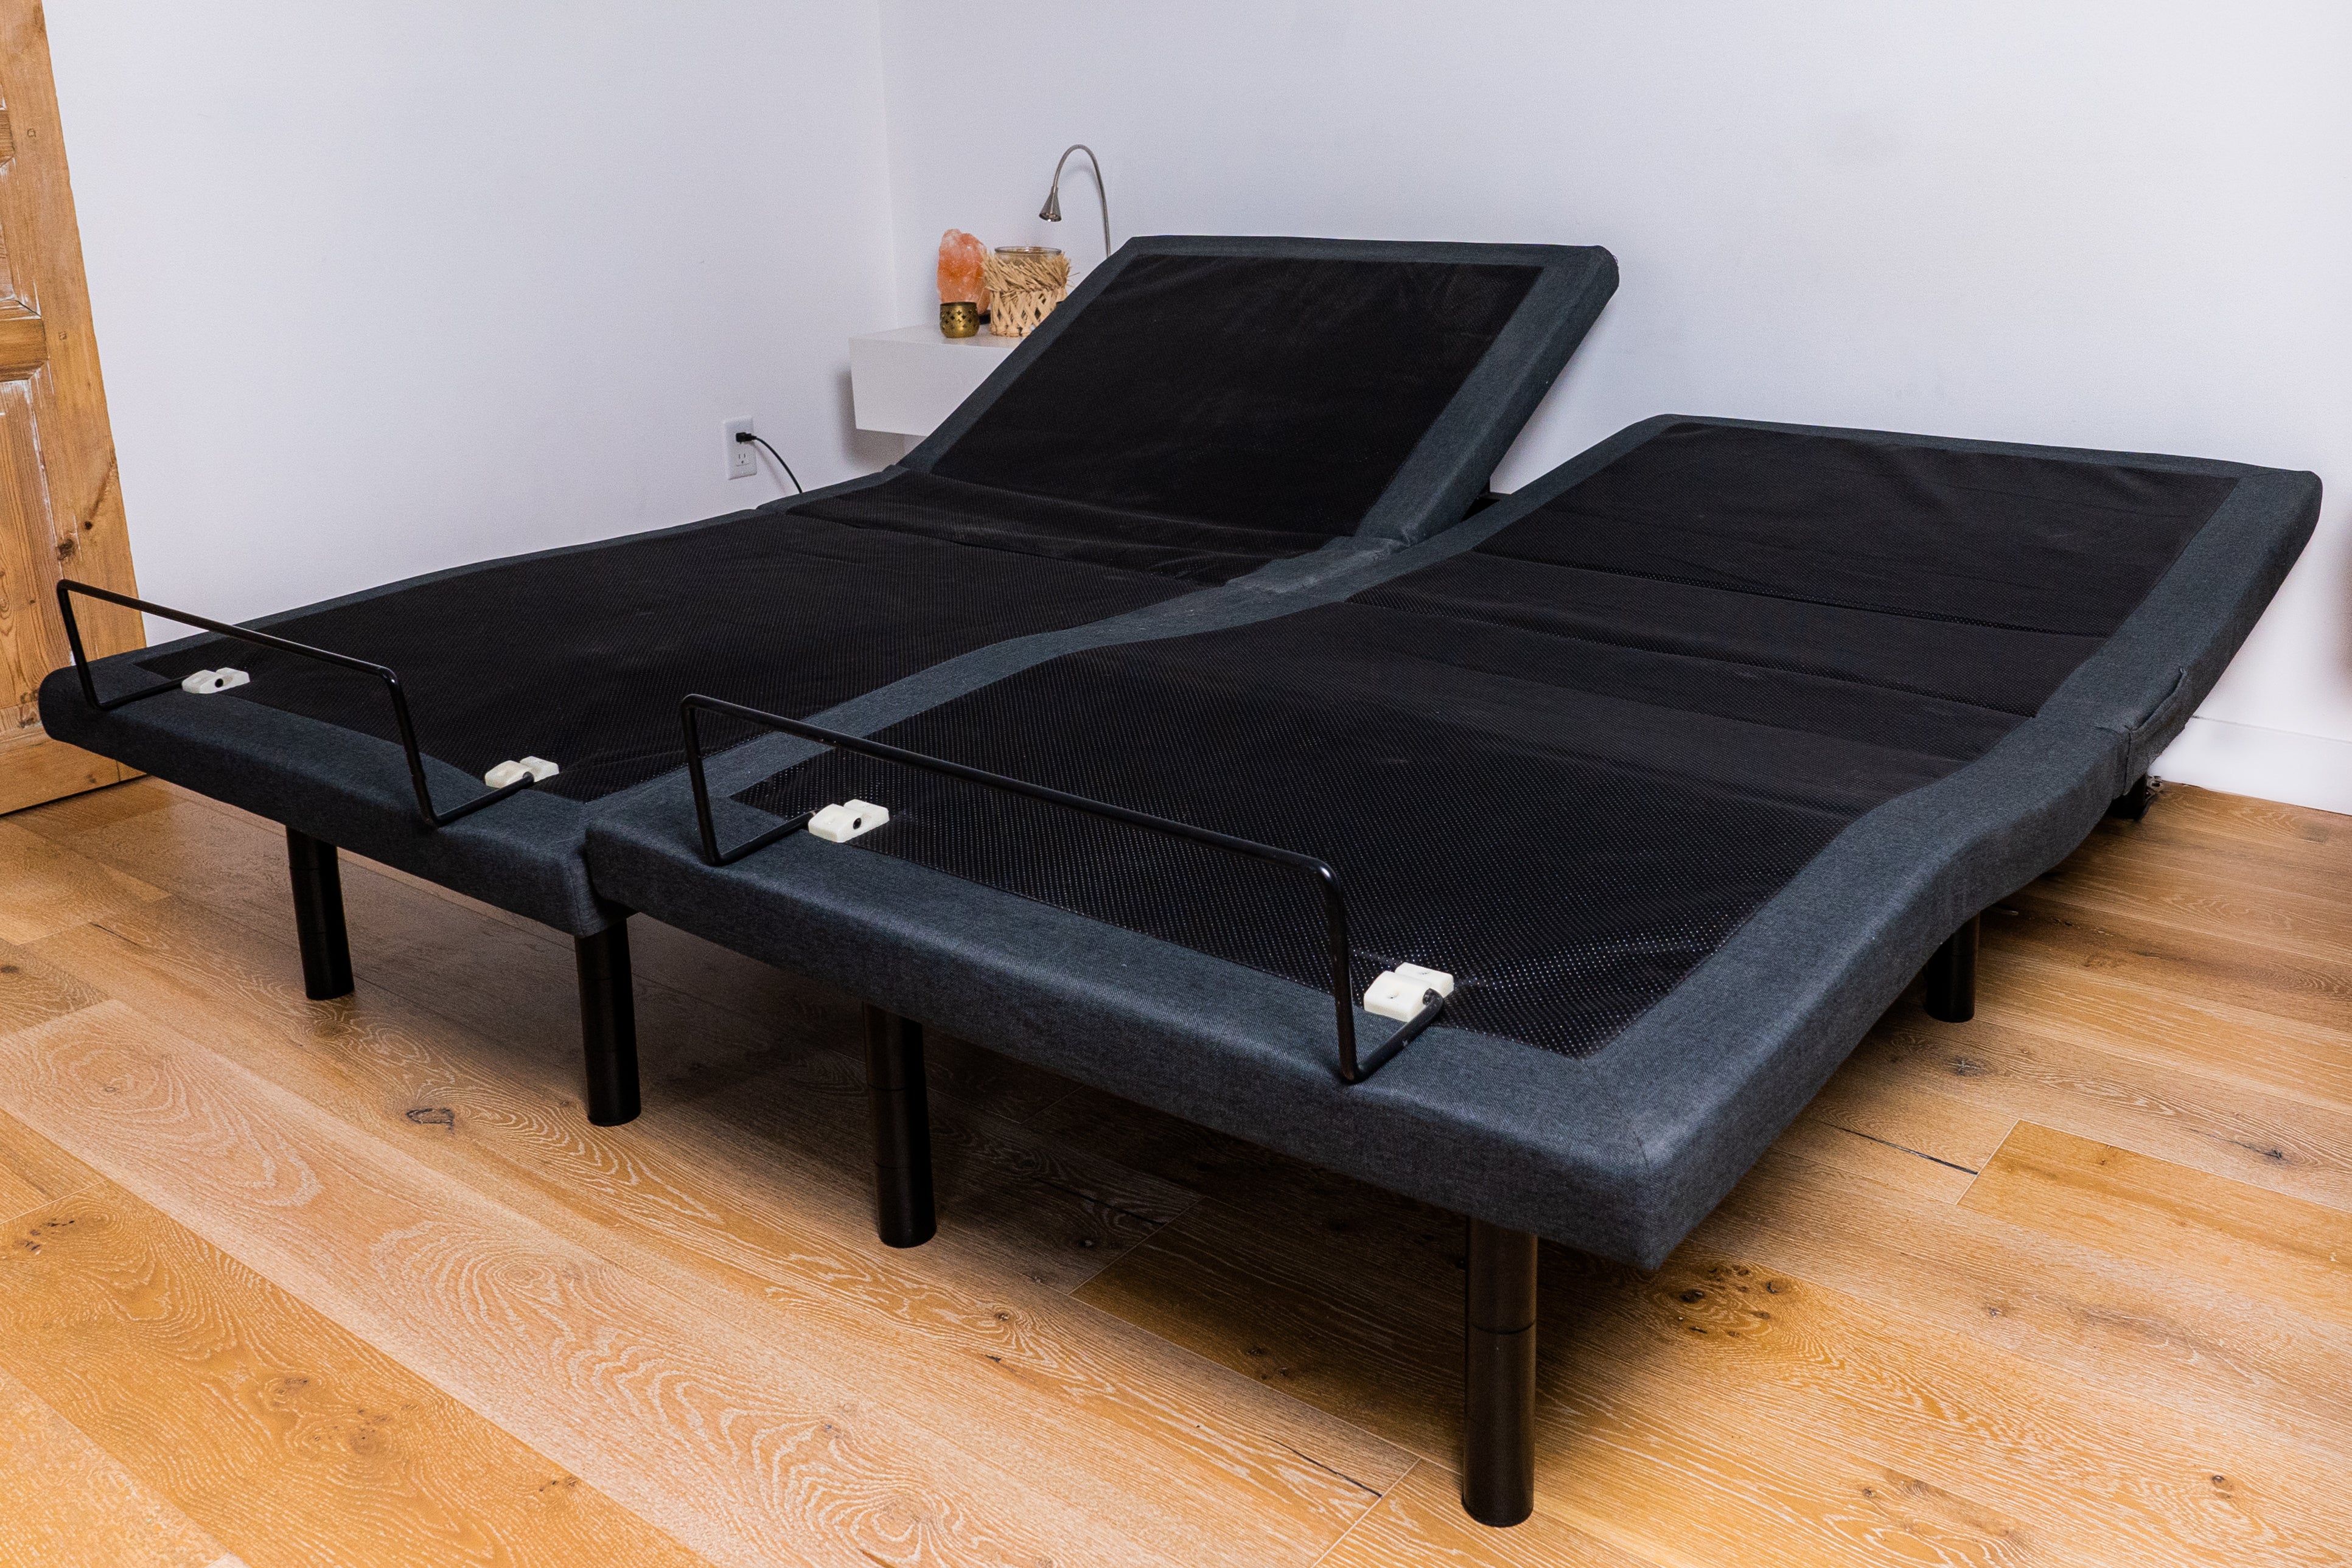 The Ultimate Beautyrest Split King Adjustable Bed